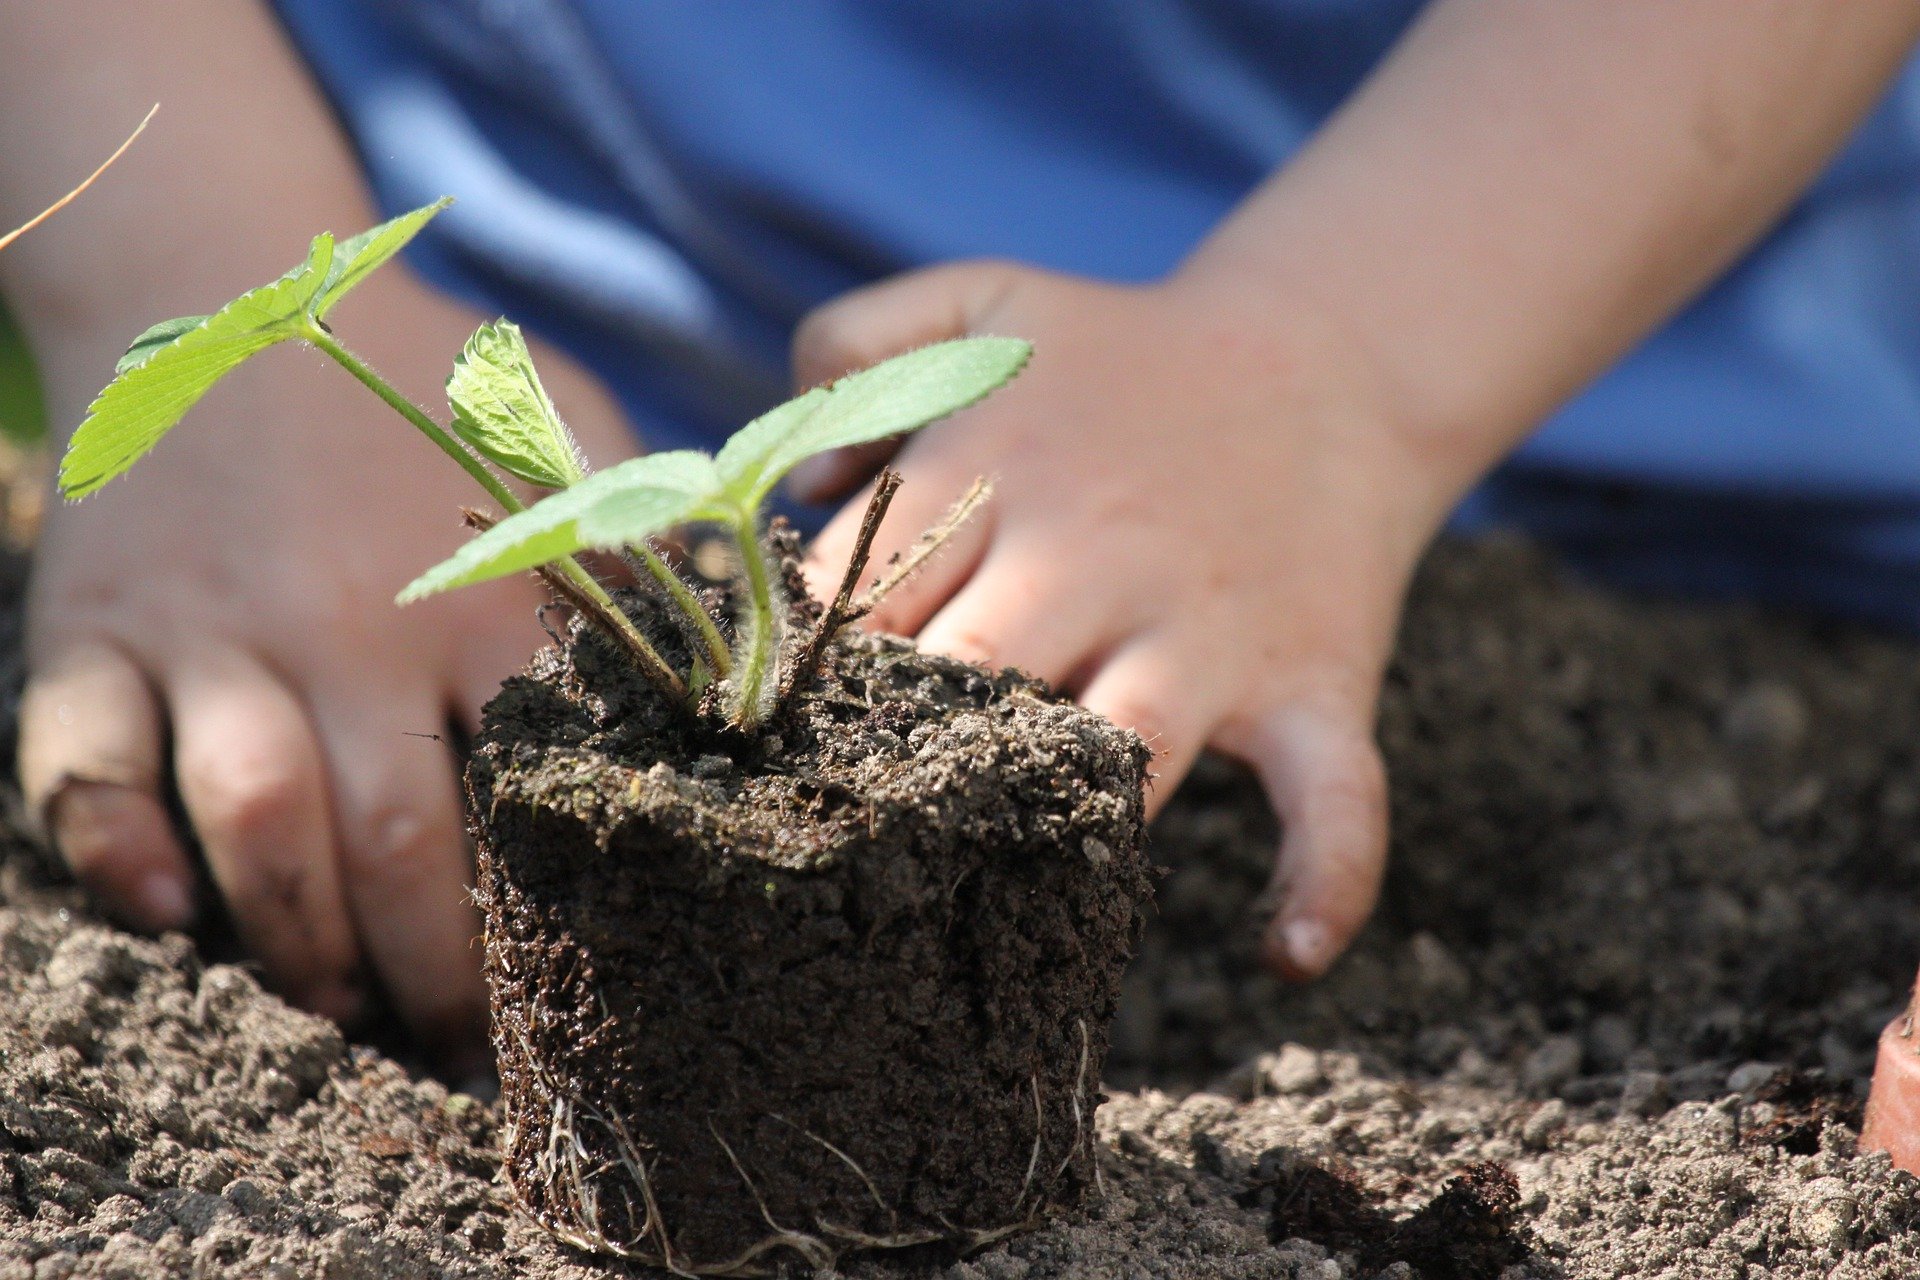 Pflanze_Kinderhände (c) Bild von Kurt Bouda auf pixabay